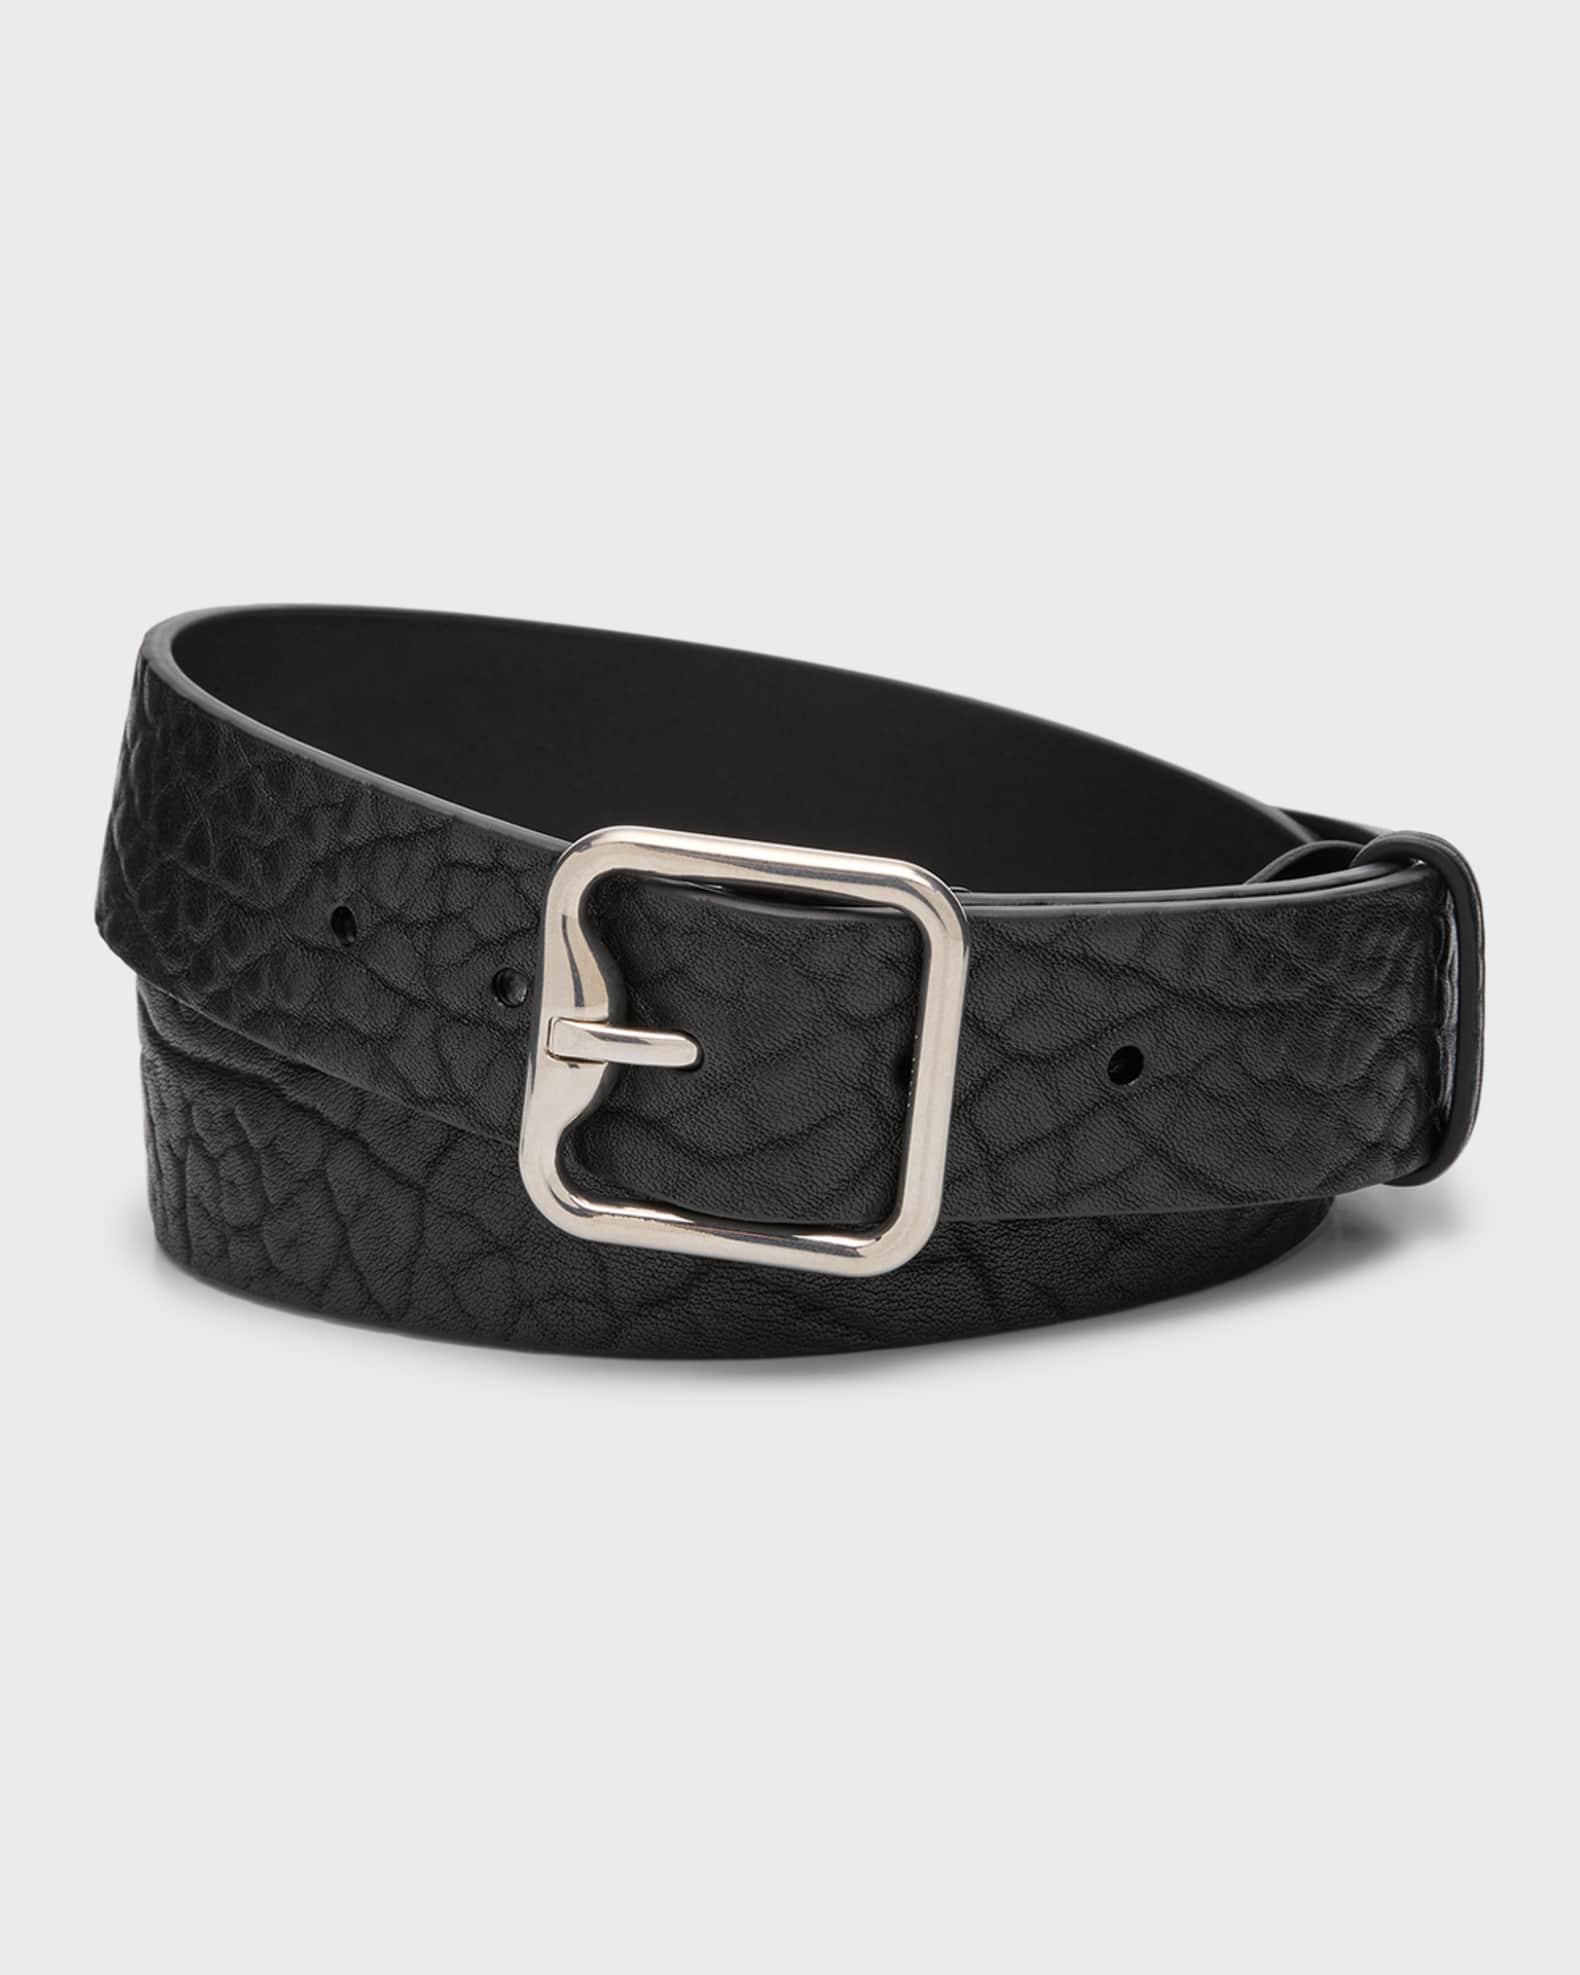 Santoni Men's belt alligator skin online shopping 